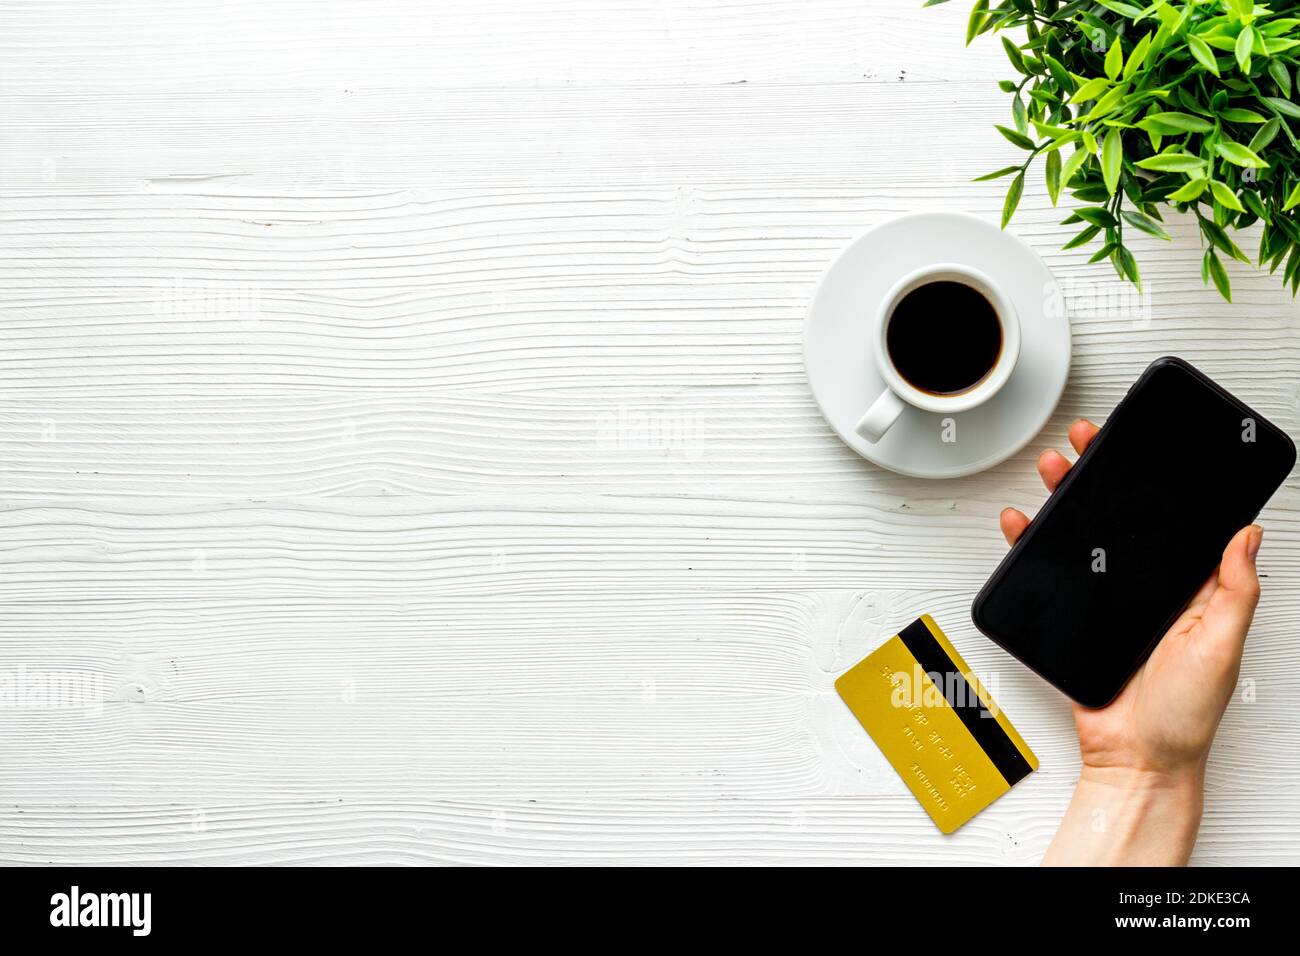 Concepto de tecnología de pago. Teléfono móvil con tarjeta de crédito, vista superior Foto de stock